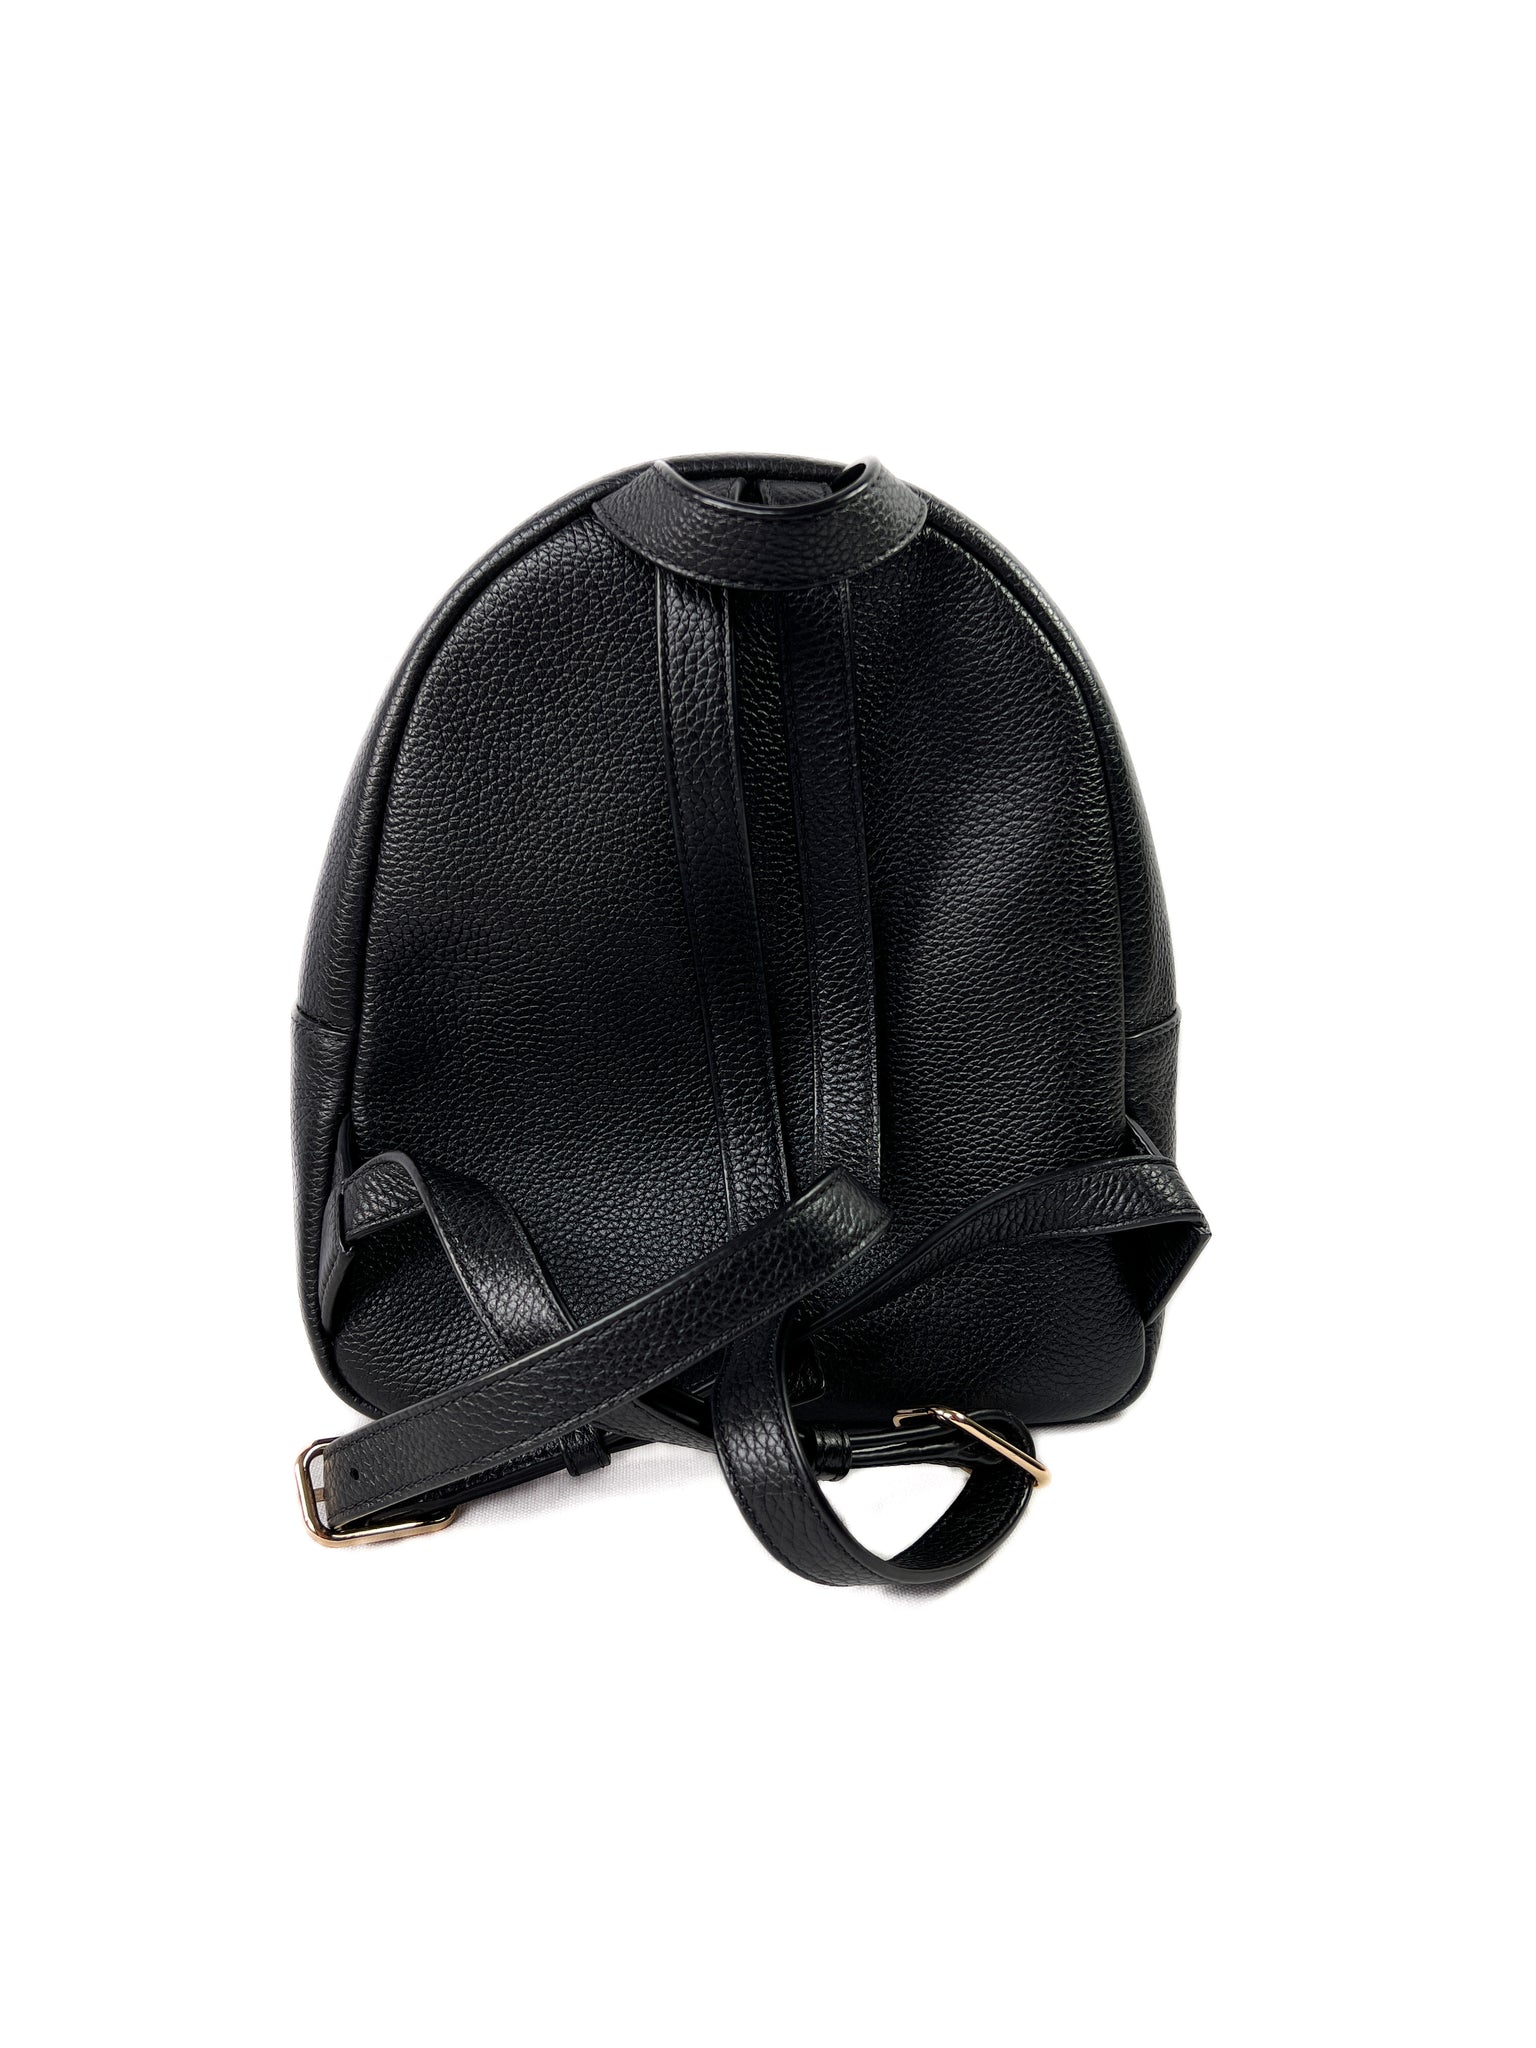 Tory Burch black leather Thea mini backpack – My Girlfriend's